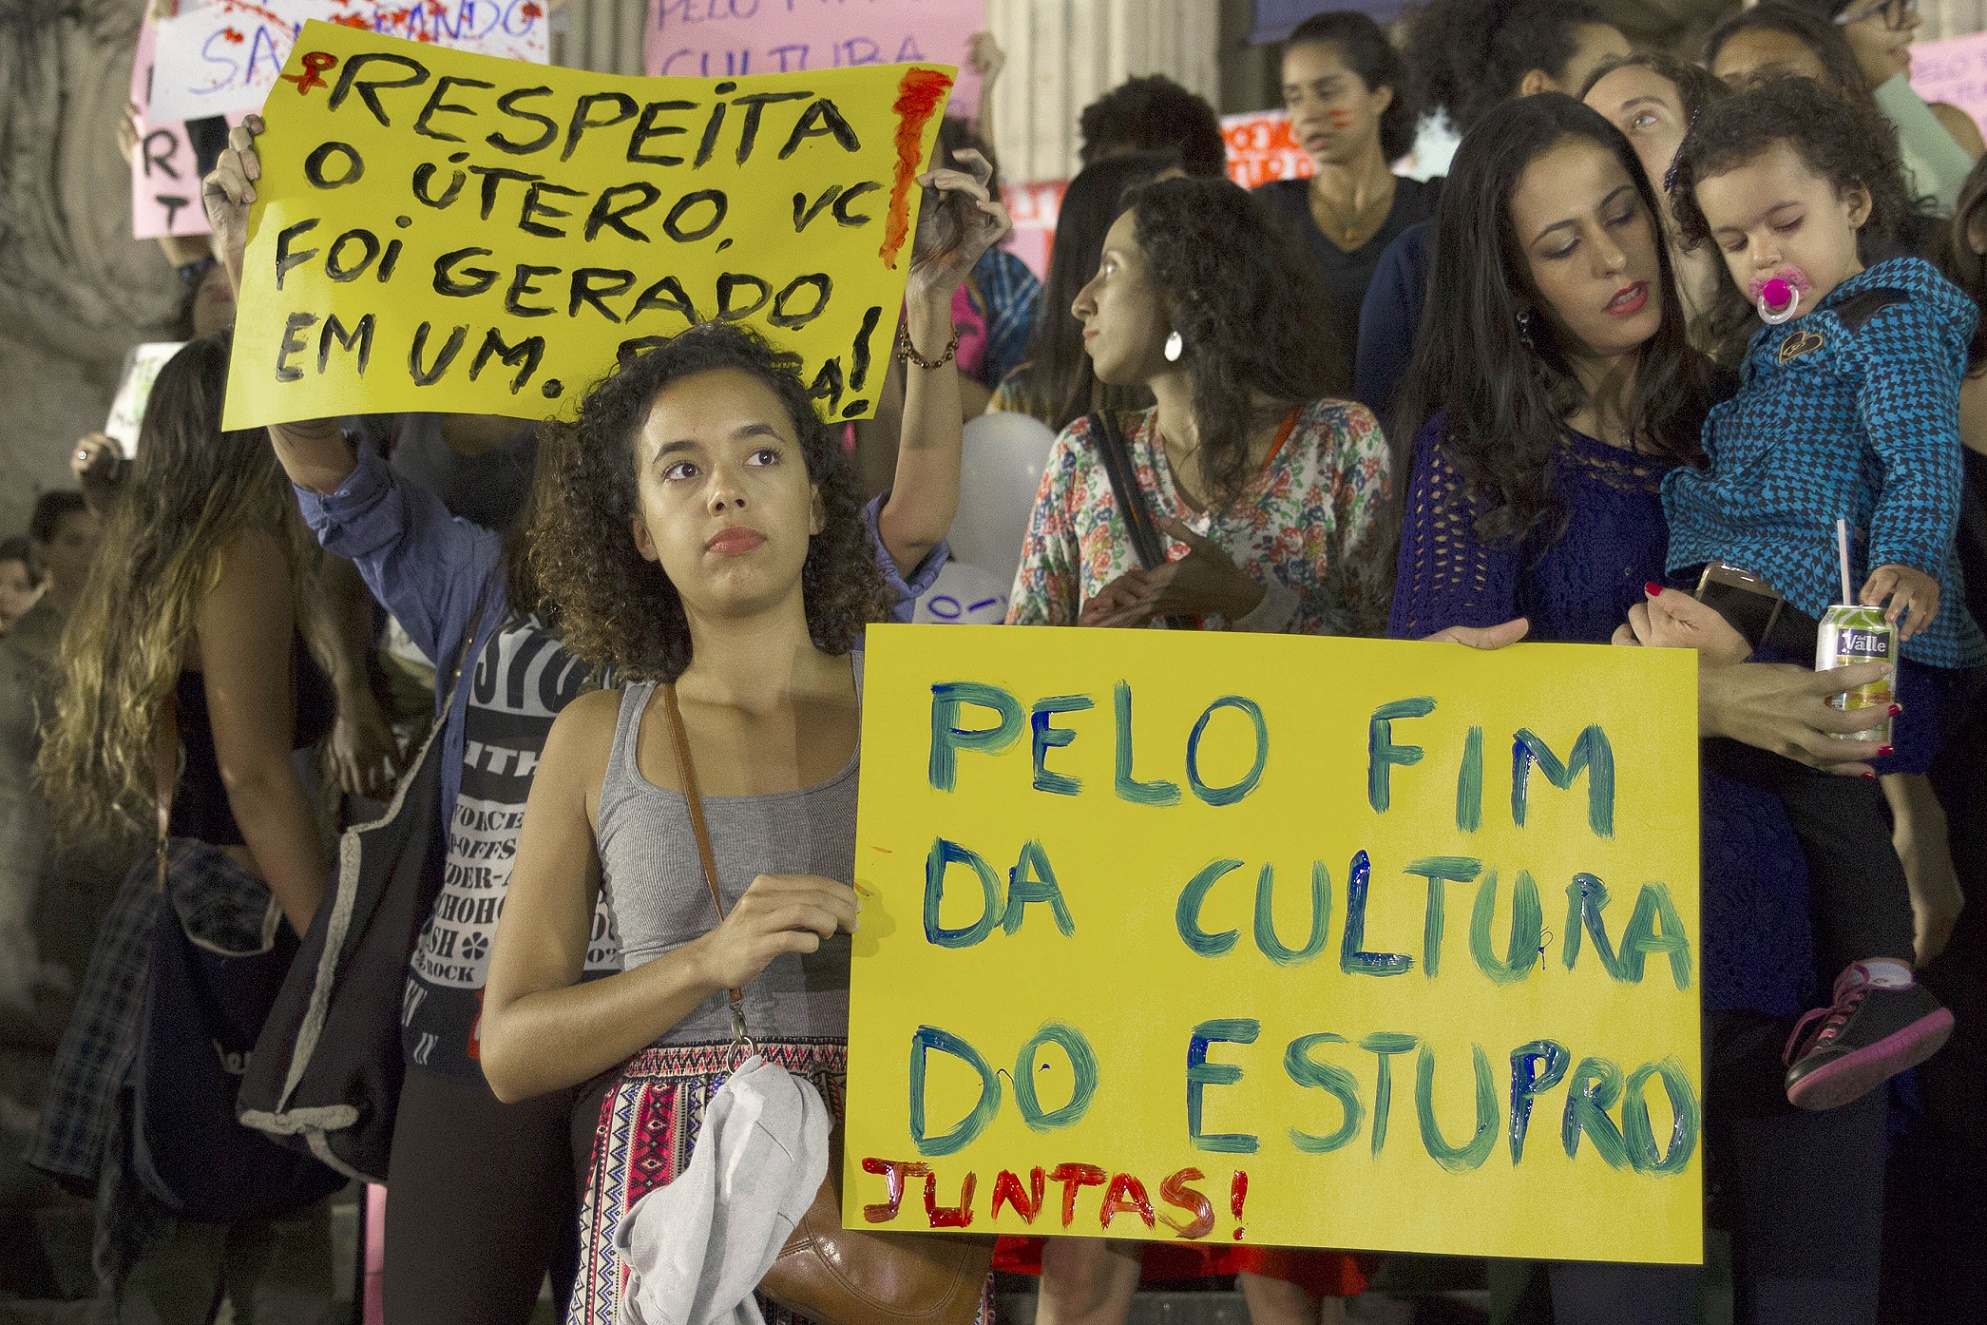 Protesto em frente à Assembléia Legislativa do Rio de Janeiro contra a cultura do estupro